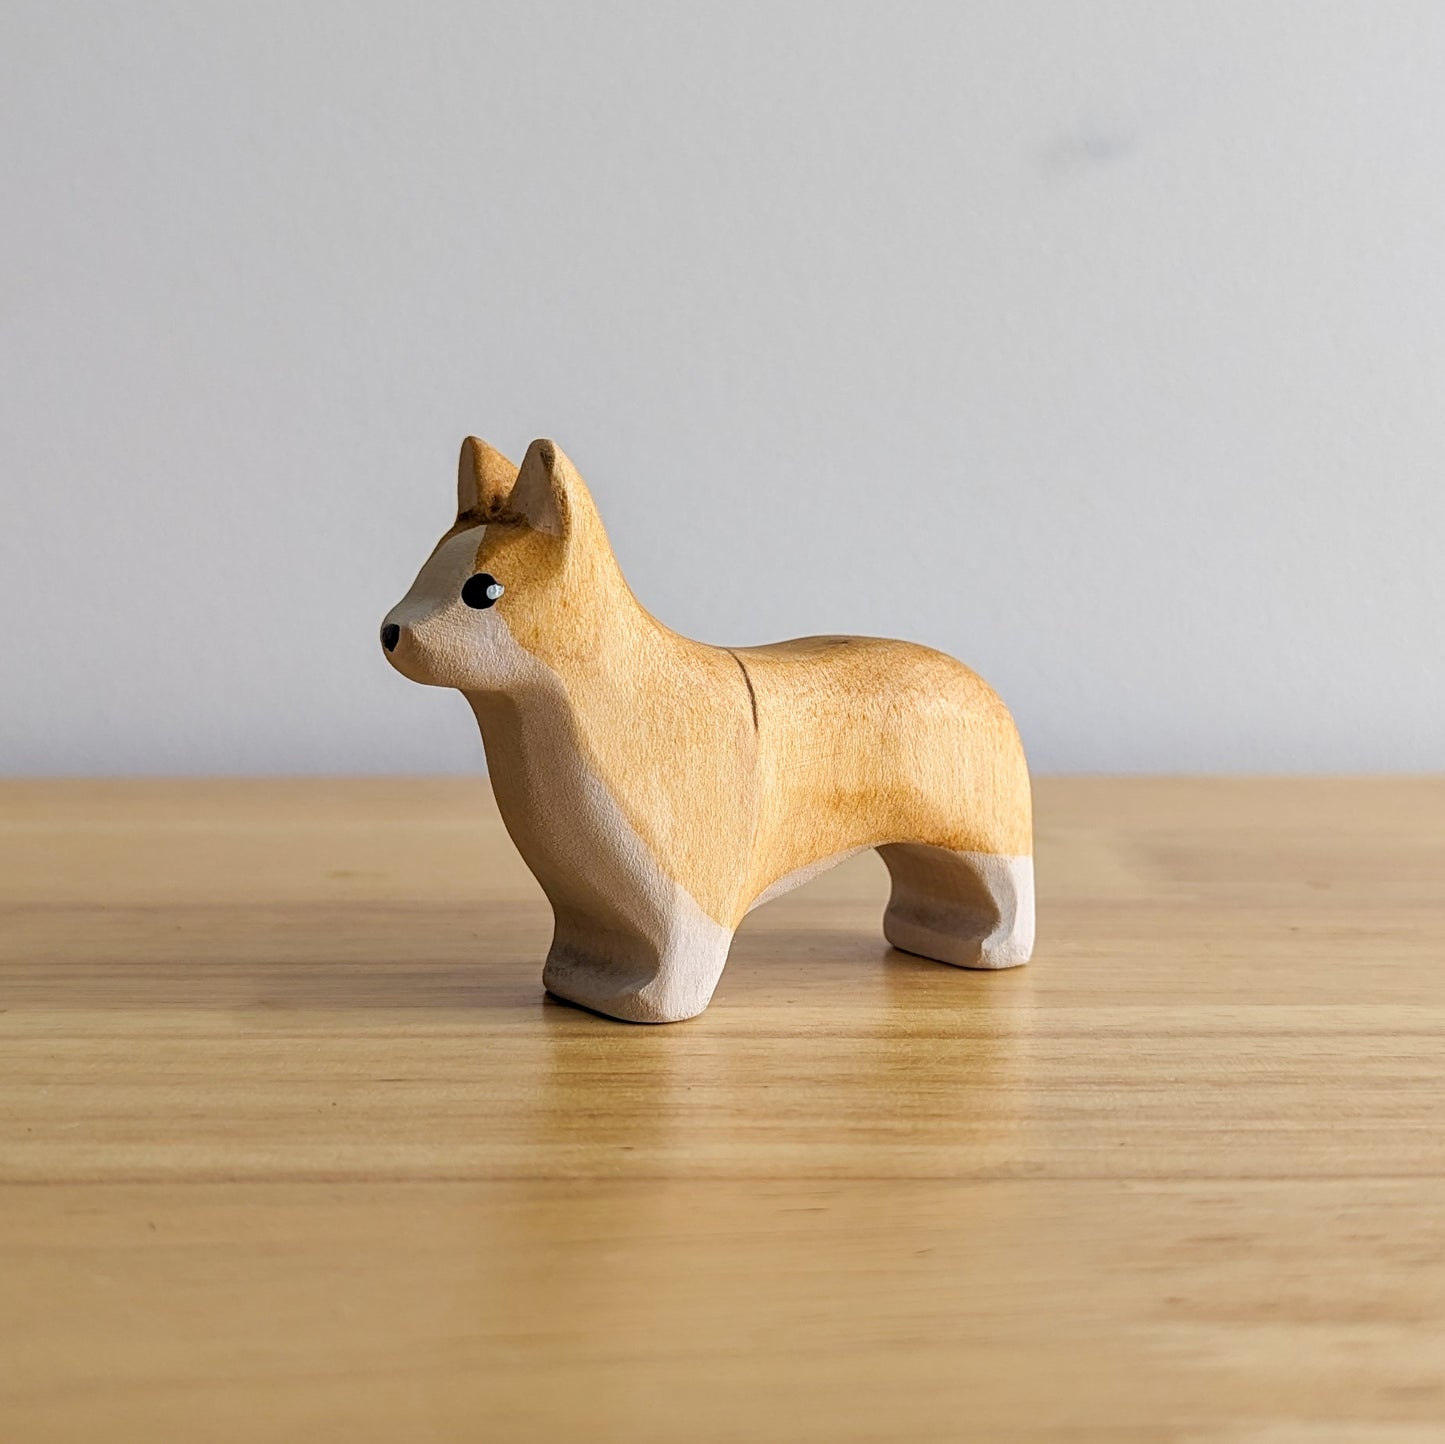 Corgi Dog Wooden Toy